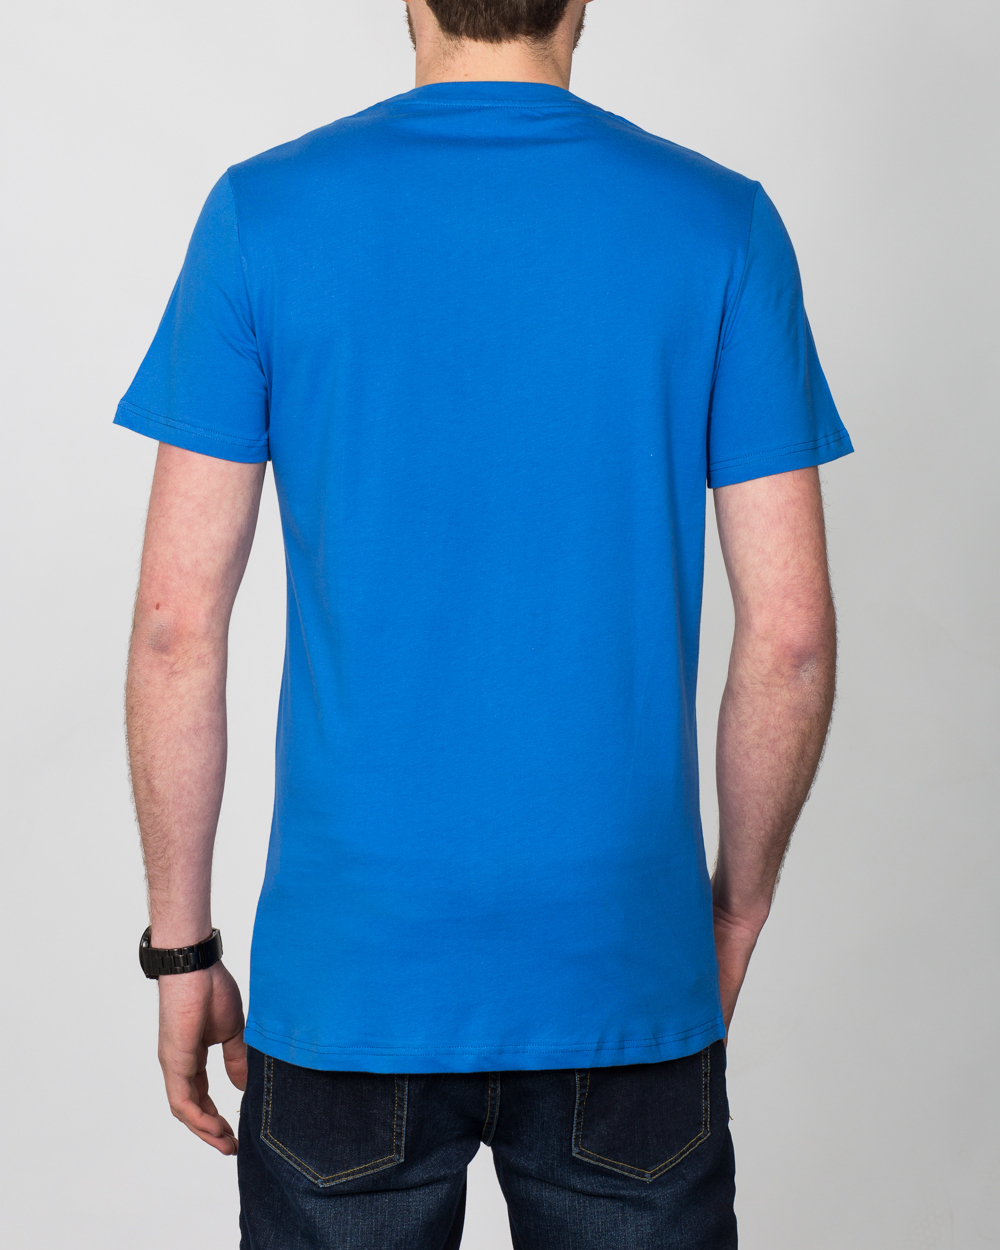 2t Tall T-Shirt (blue) | 2tall.com